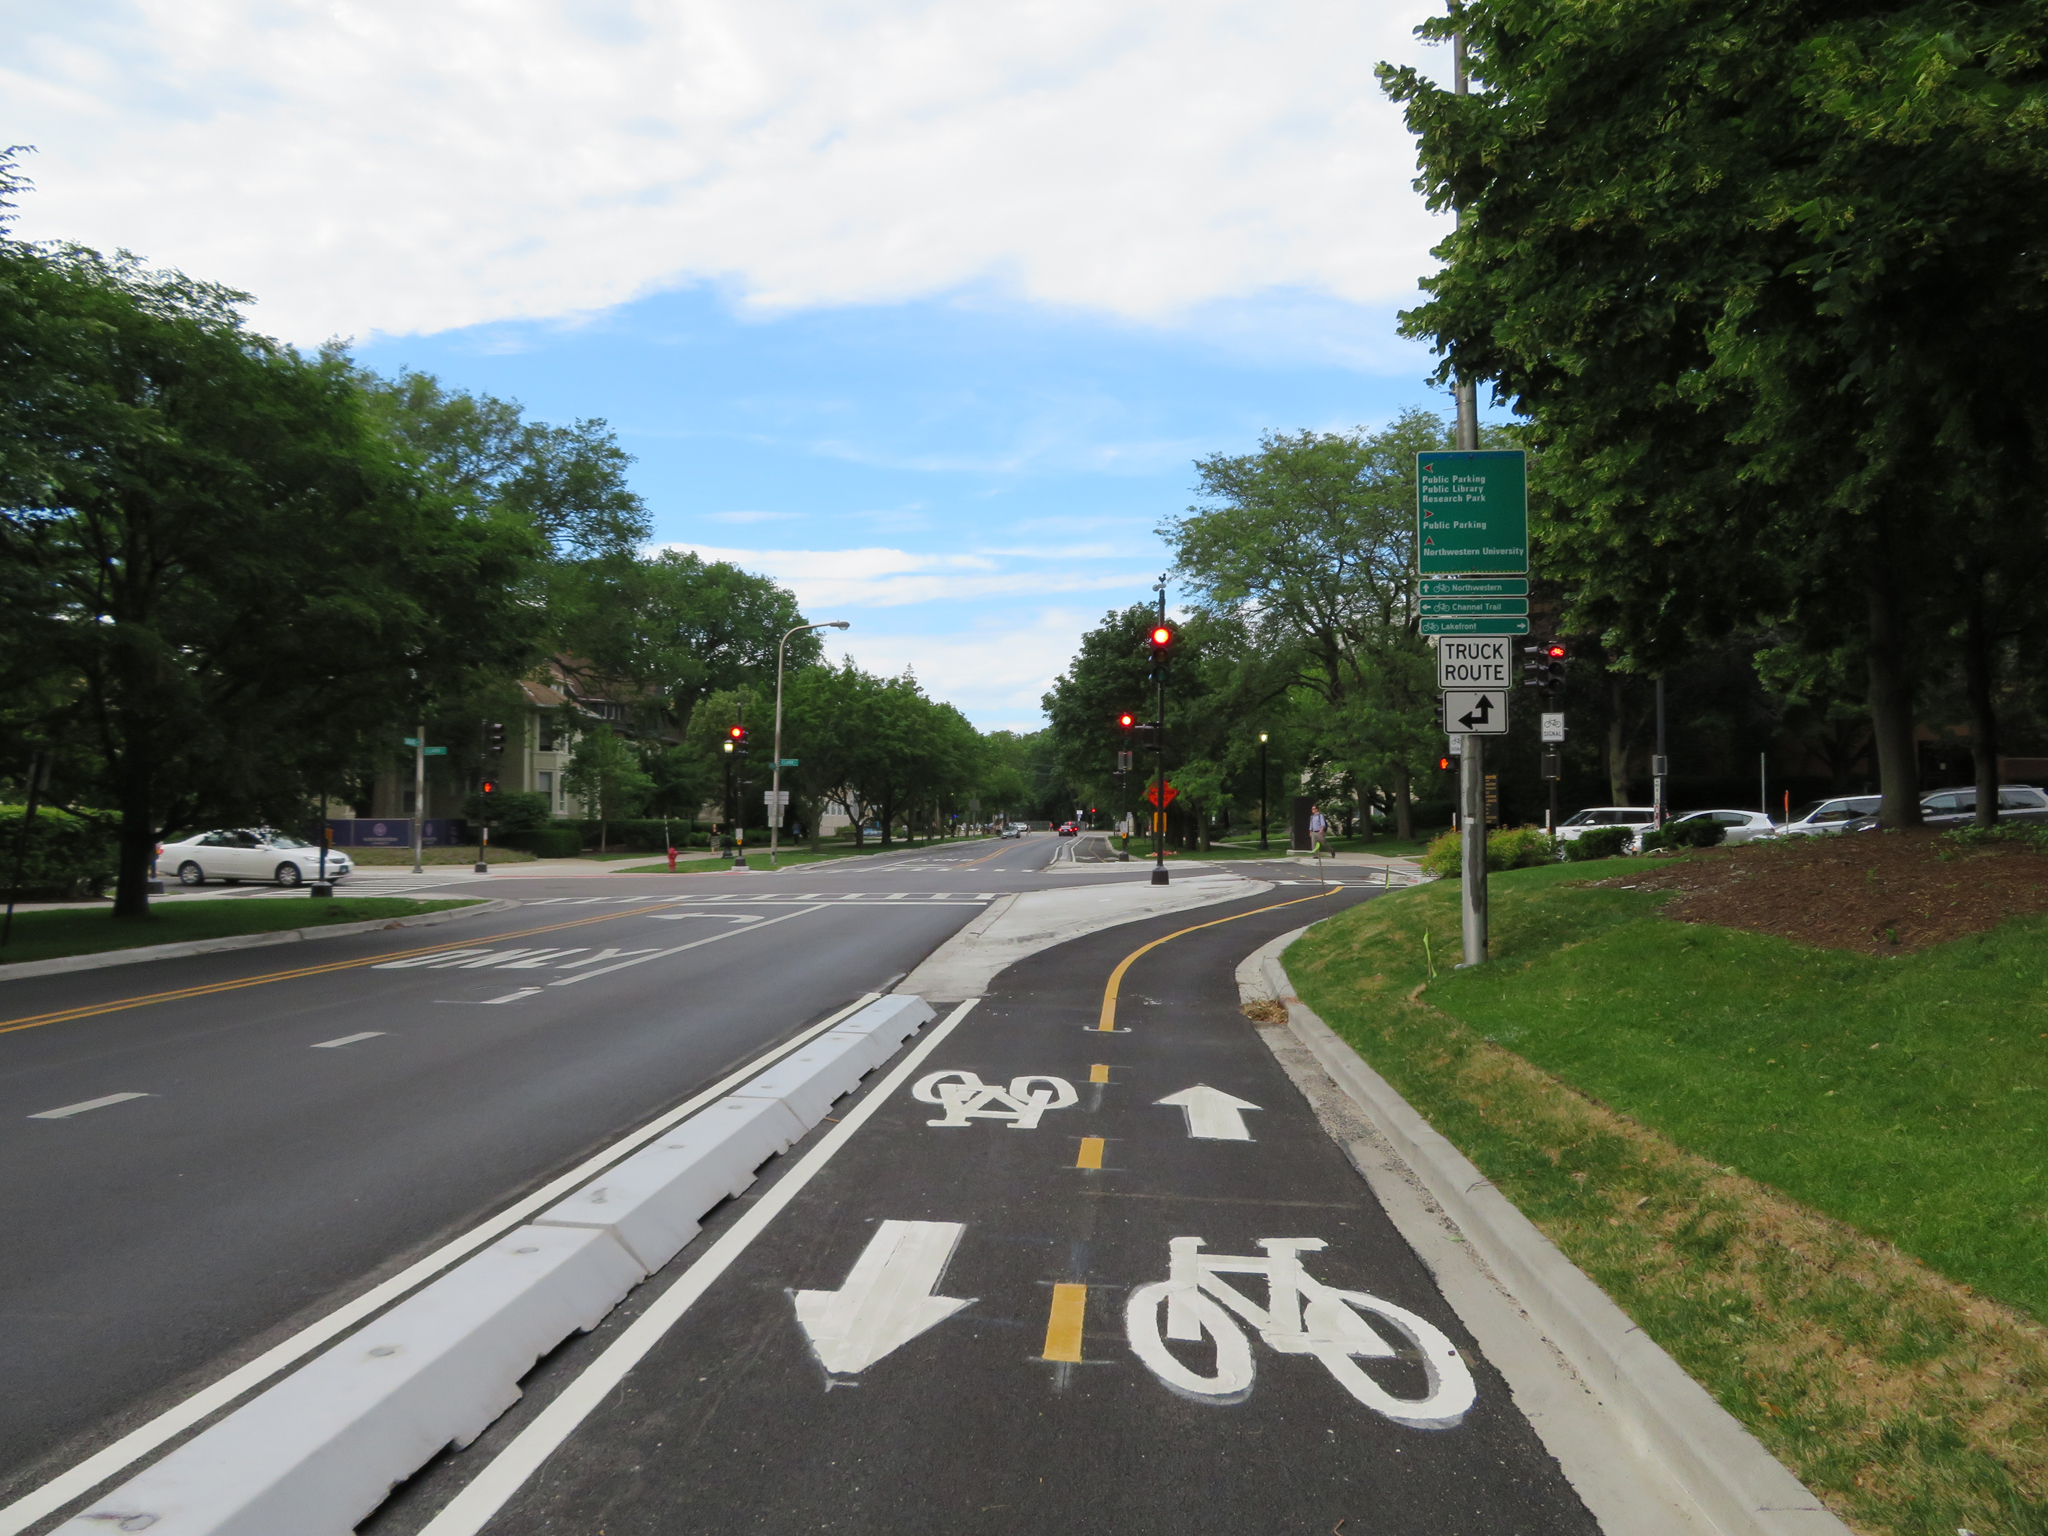 Bike lane. Park Lane Street Road. Way for Bike on way. - Turning car Lanes into Bike Lanes.